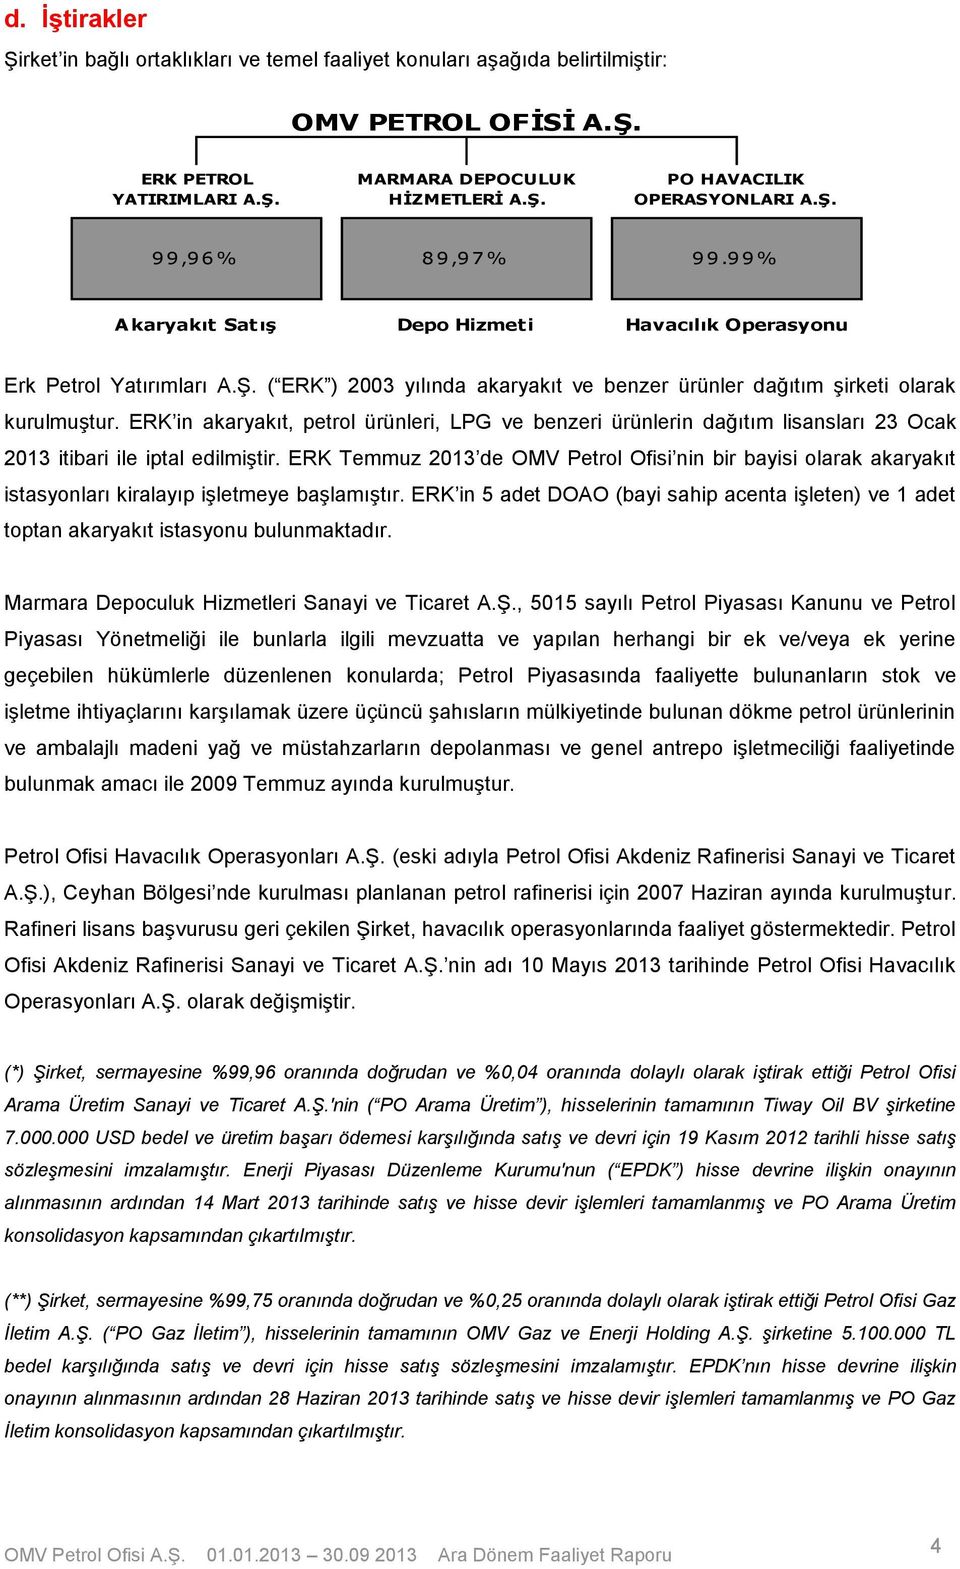 ERK in akaryakıt, petrol ürünleri, LPG ve benzeri ürünlerin dağıtım lisansları 23 Ocak 2013 itibari ile iptal edilmiştir.